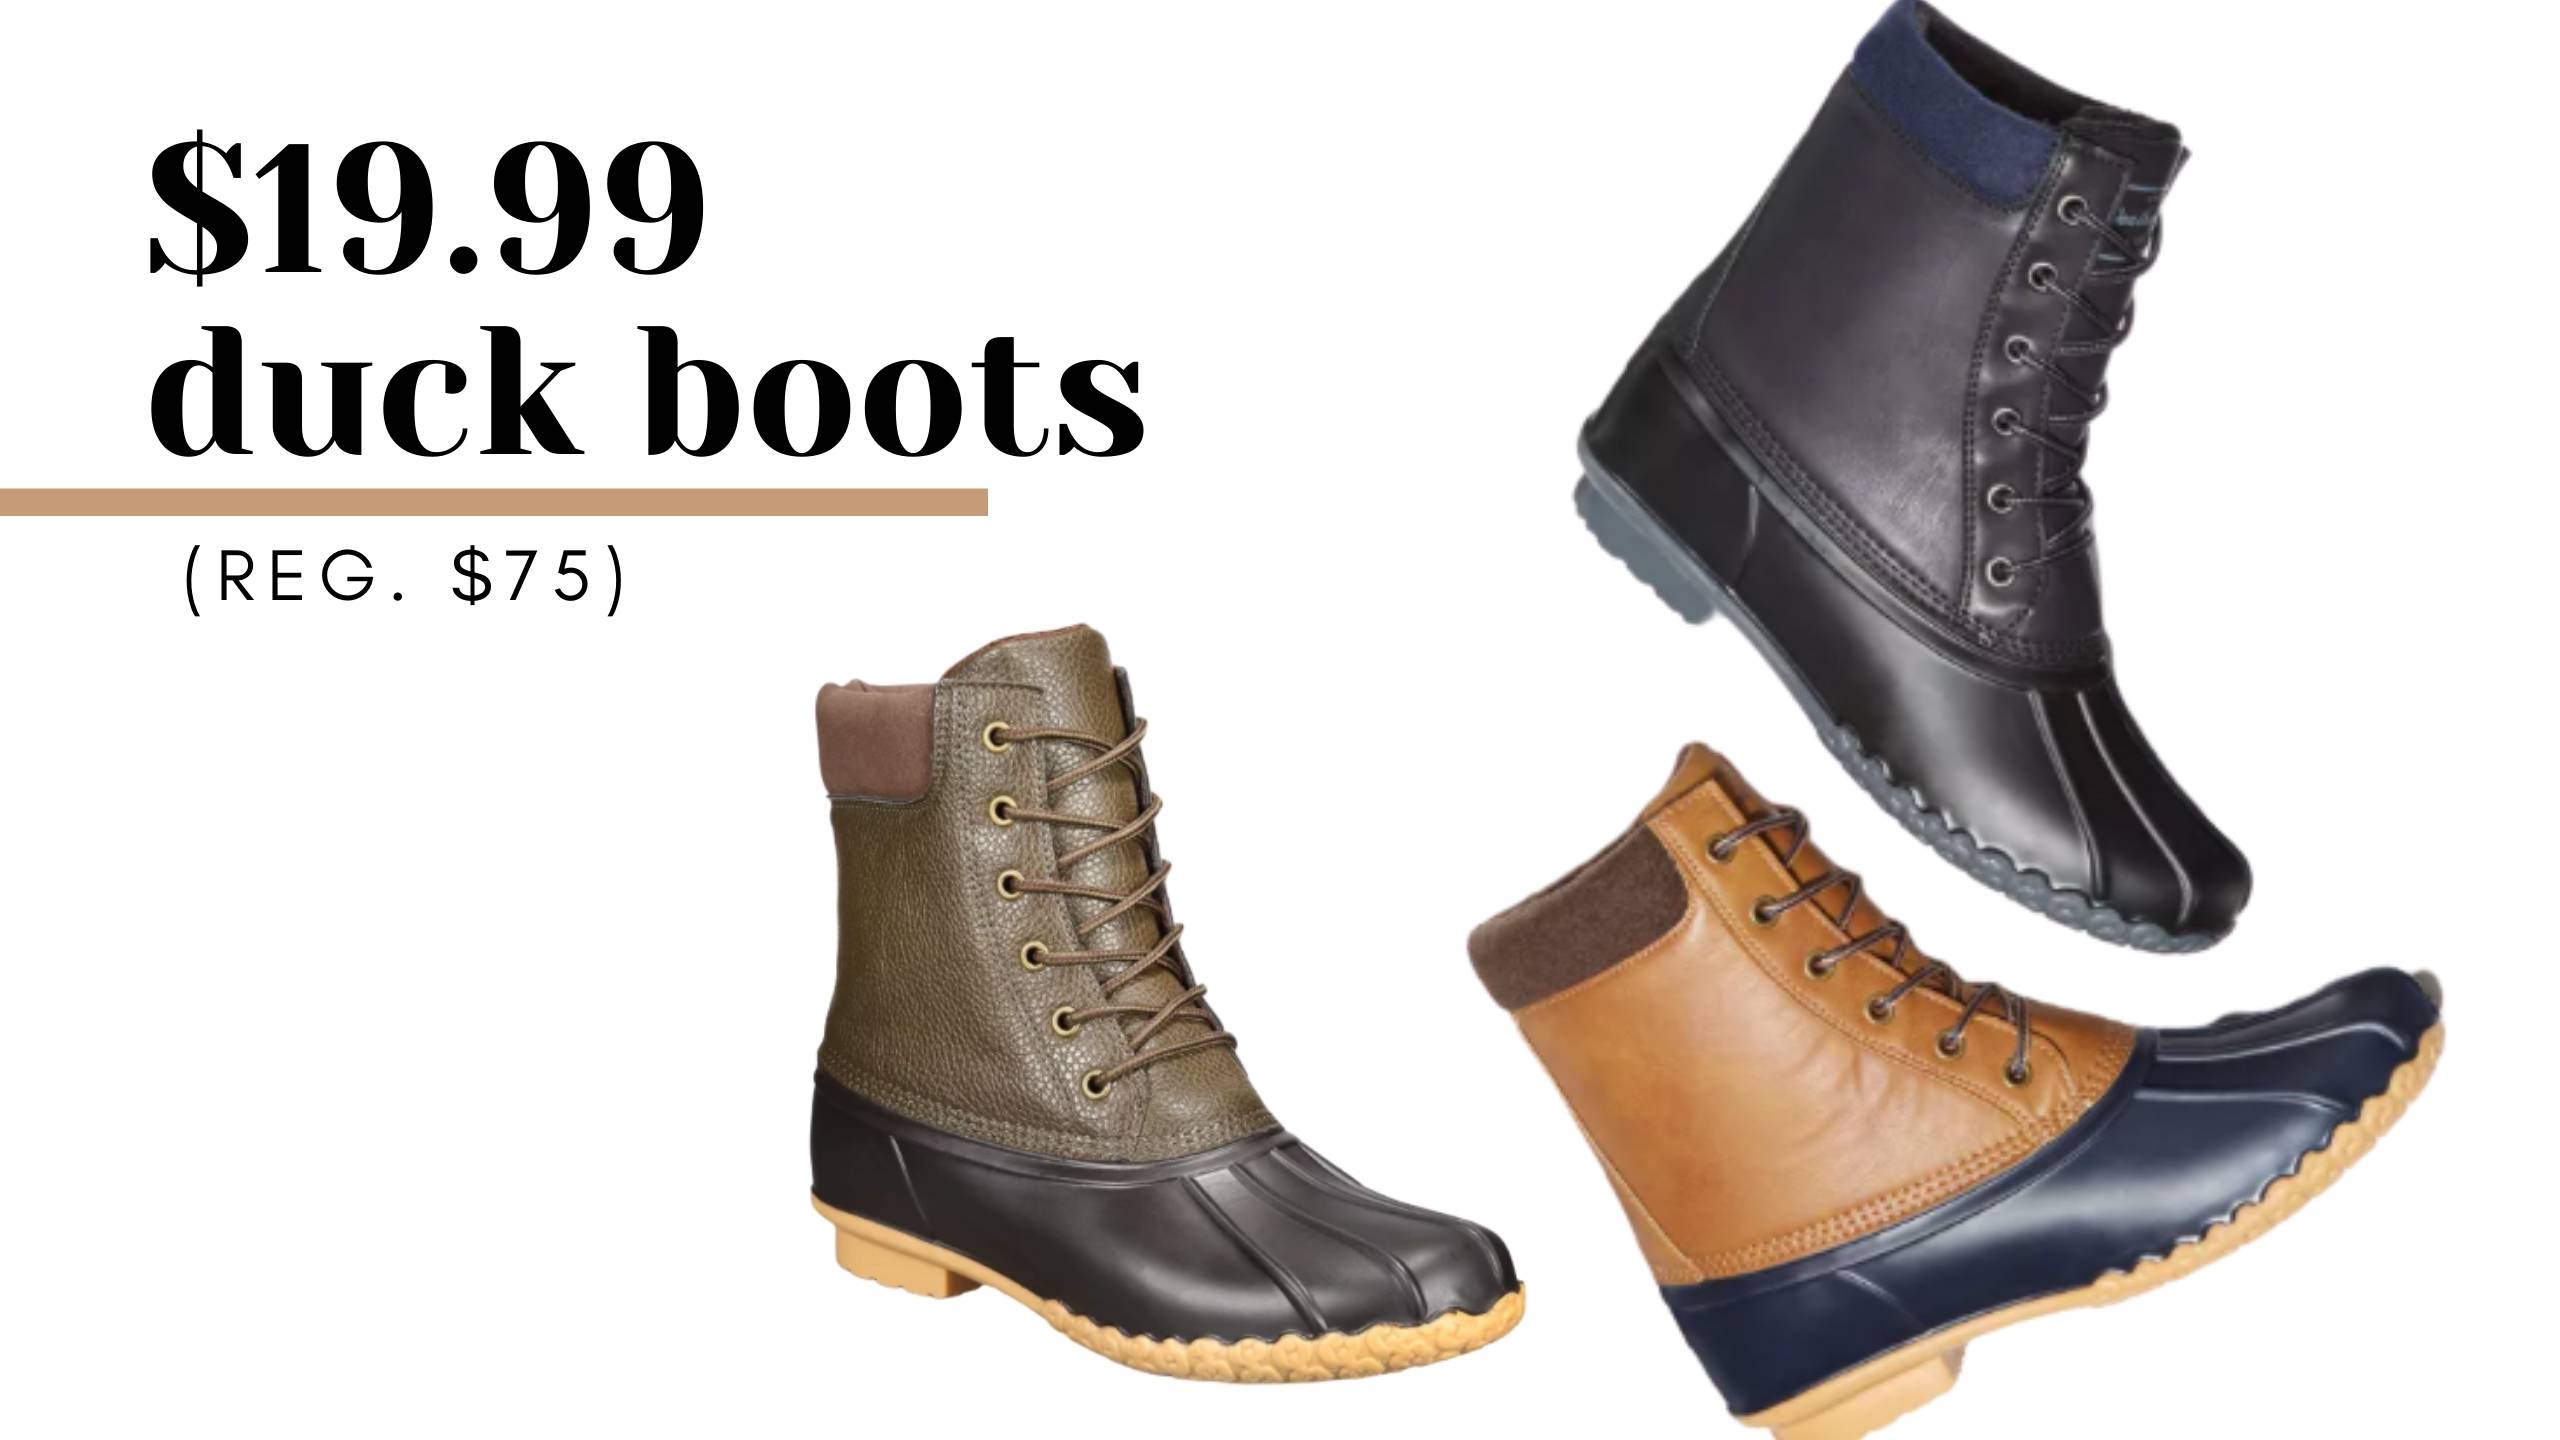 Weatherproof Men's Duck Boots for $19 